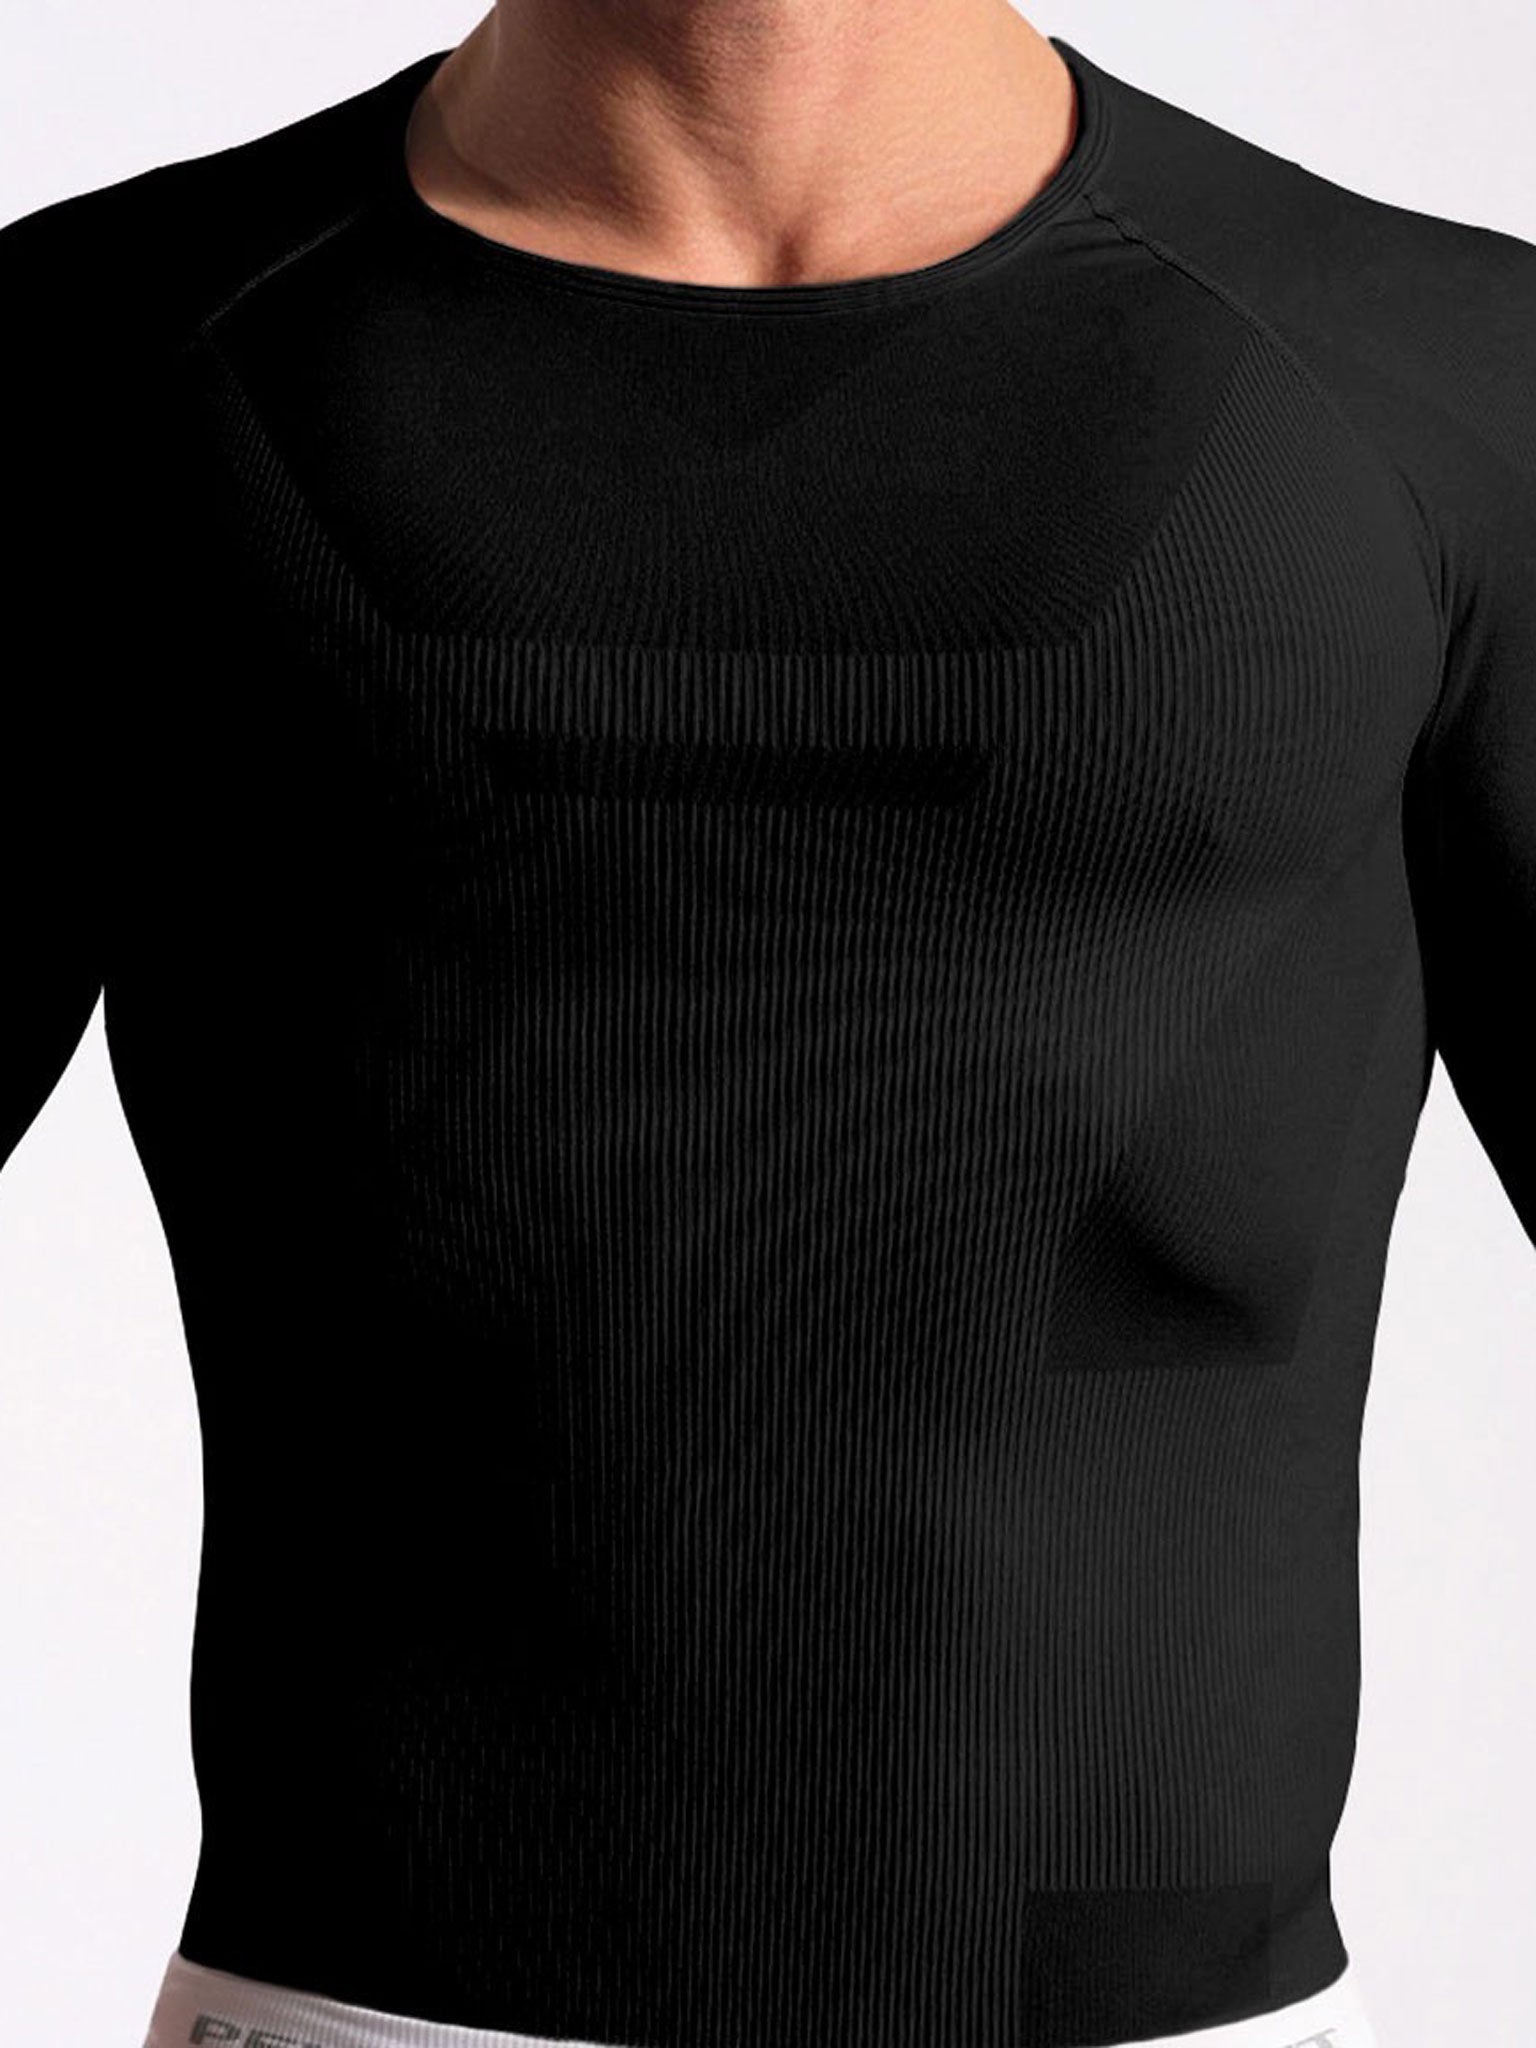 The new Core range vest from Pelham & Strutt